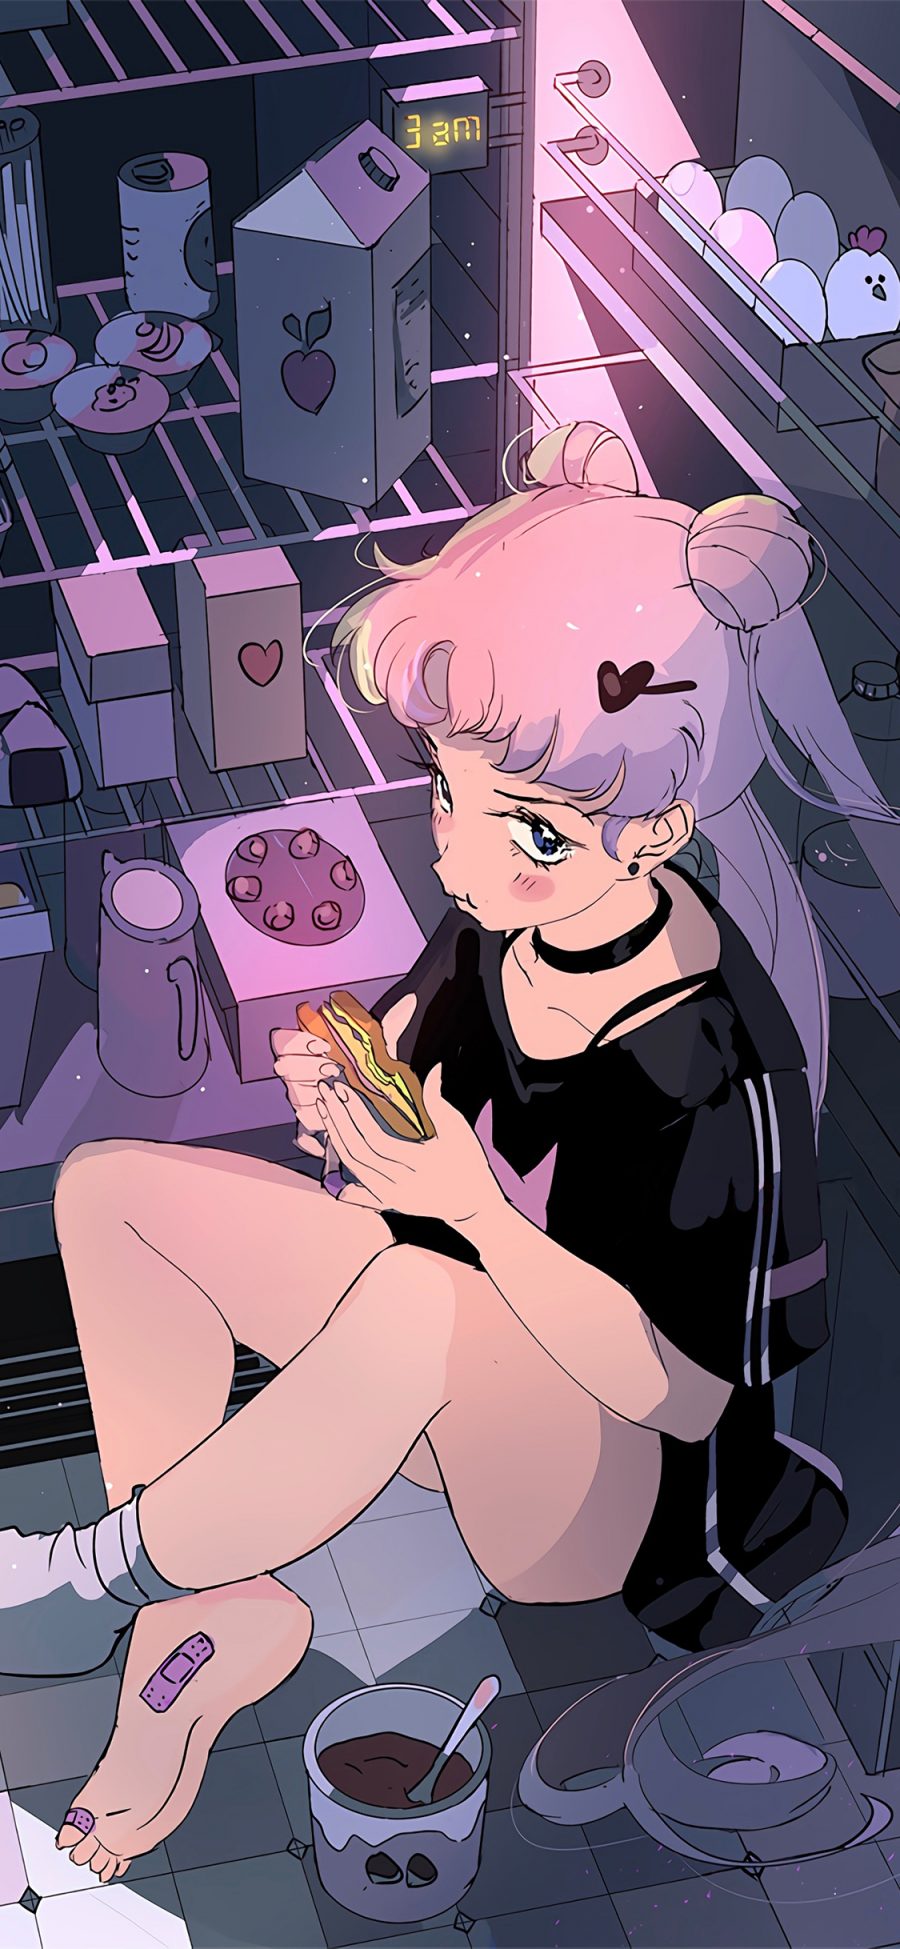 [2436×1125]美少女战士 紫色 冰箱 吃 三明治 漫画 创可贴 苹果手机动漫壁纸图片